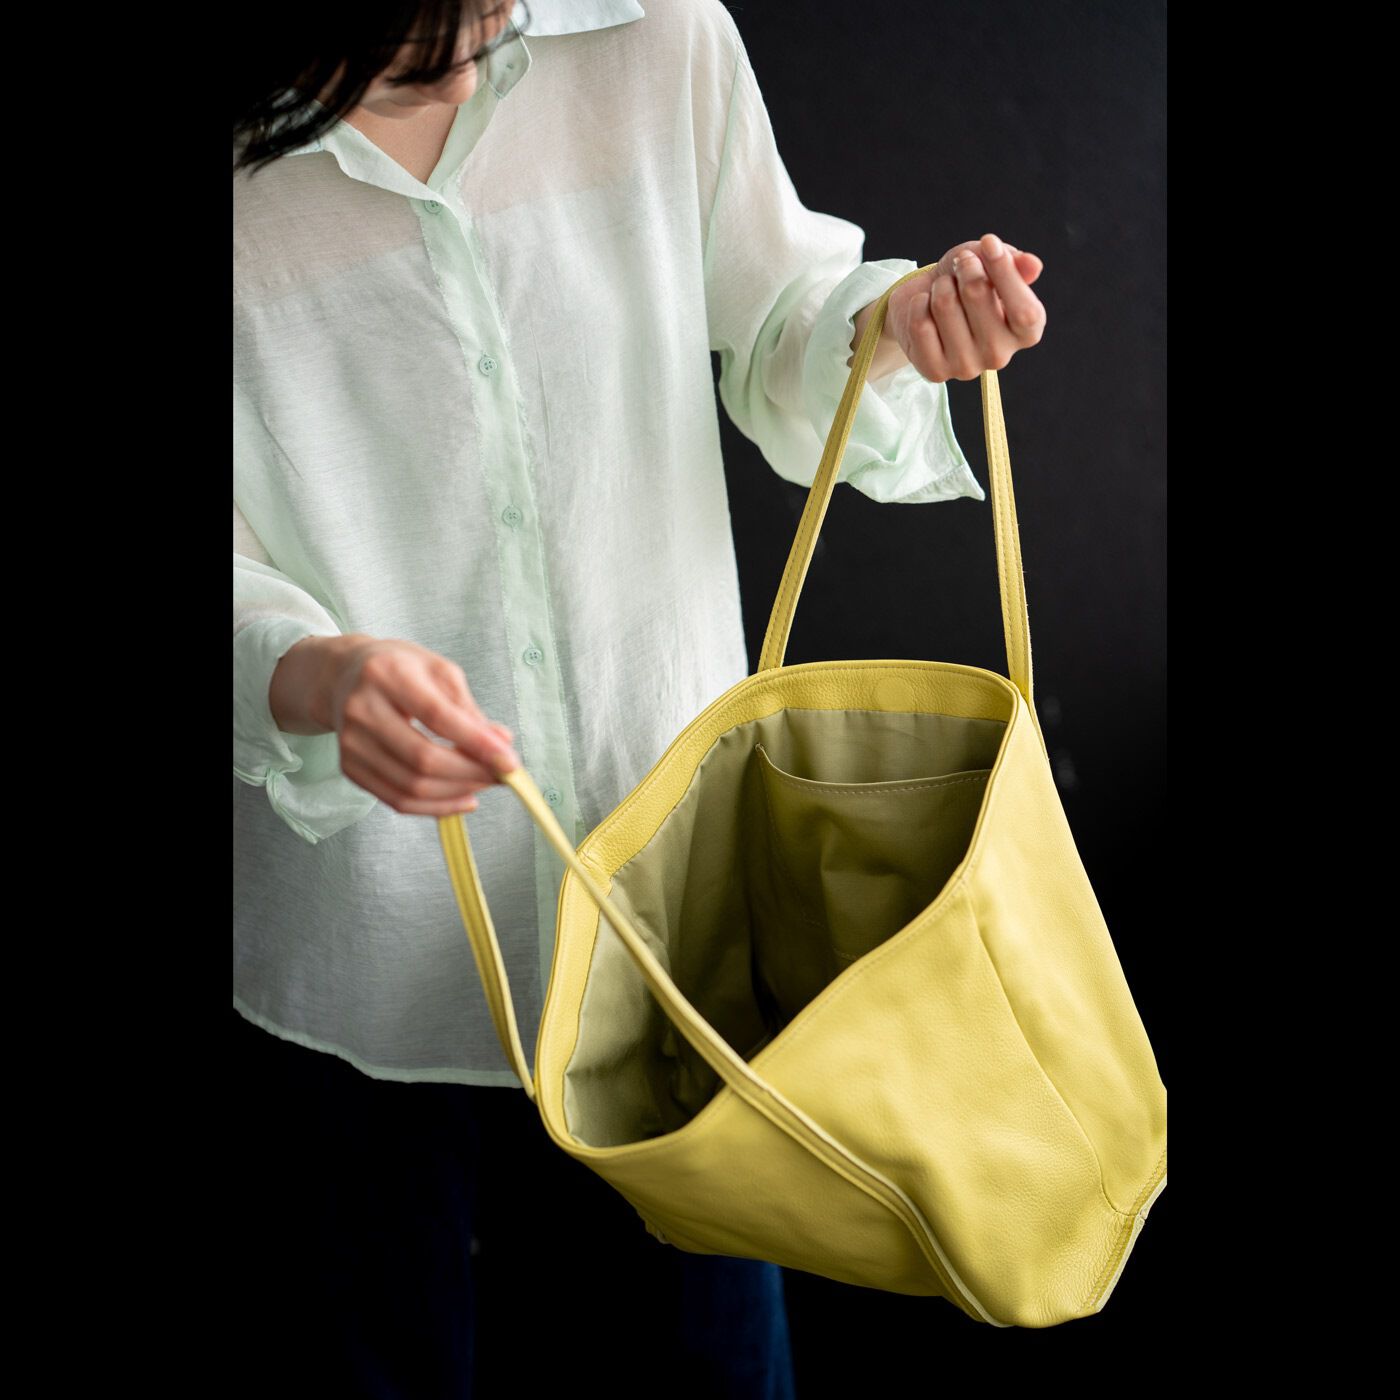 ＆Stories|福岡の鞄作家と作った 職人本革のトゥーシーンバッグ〈ライムイエロー〉|薄くて軽いから、本革なのに布バッグのような使い心地。想像以上にラフに使えるのが心強い。